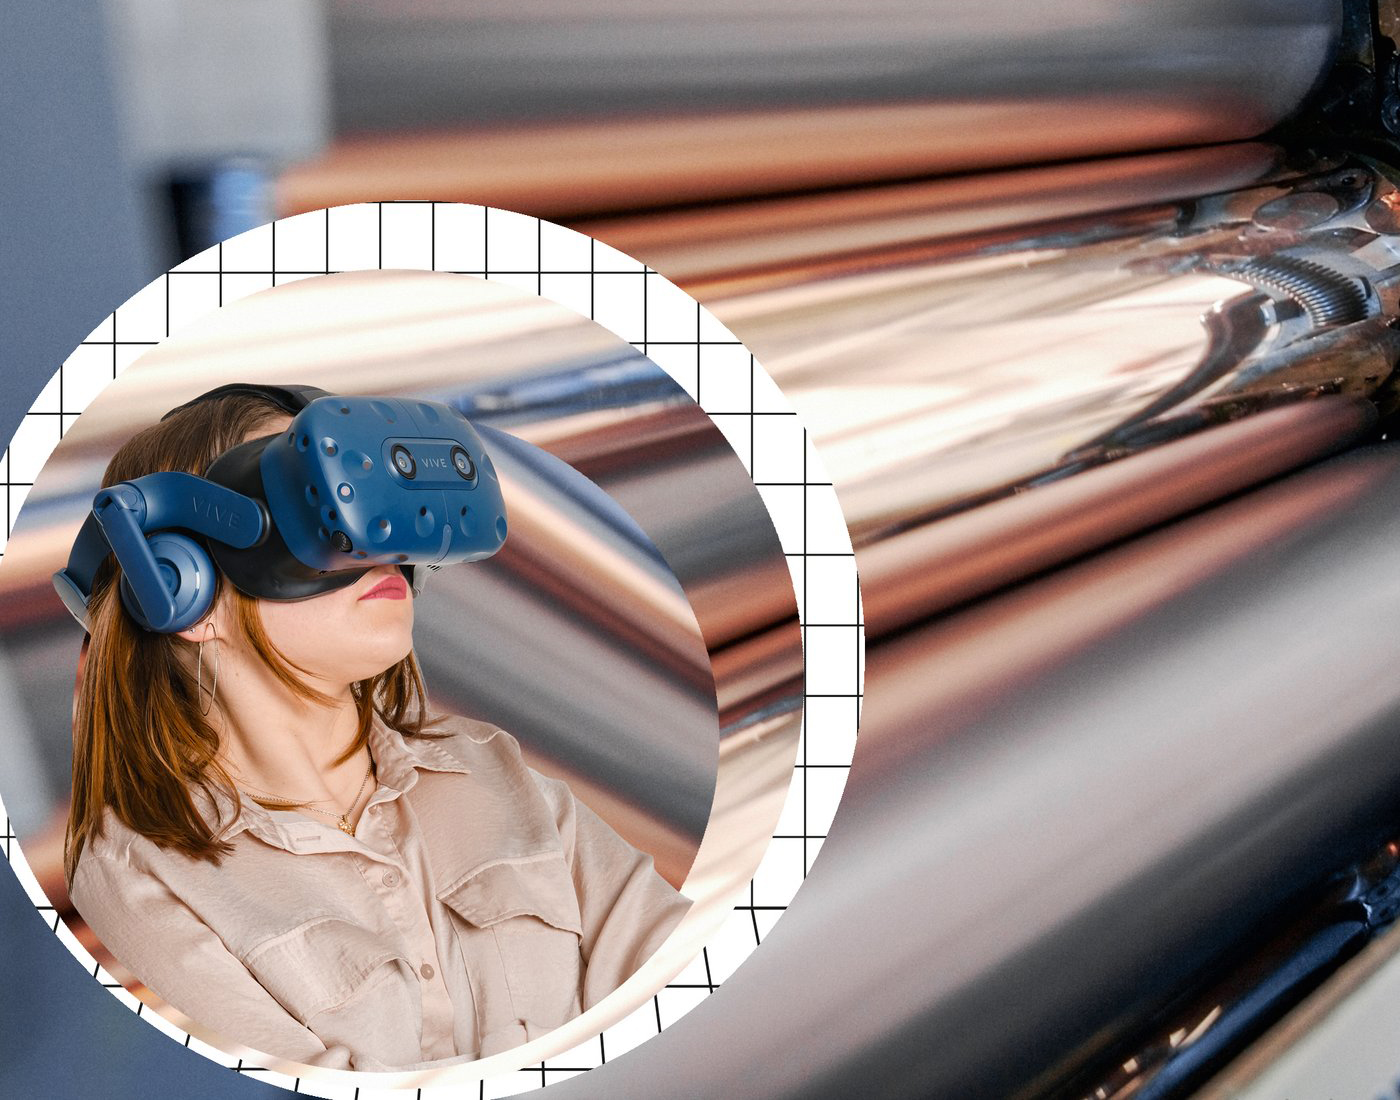 Eine junge Frau trägt eine VR Brille. Im Hintergrund ist eine Druckpresse zu sehen.